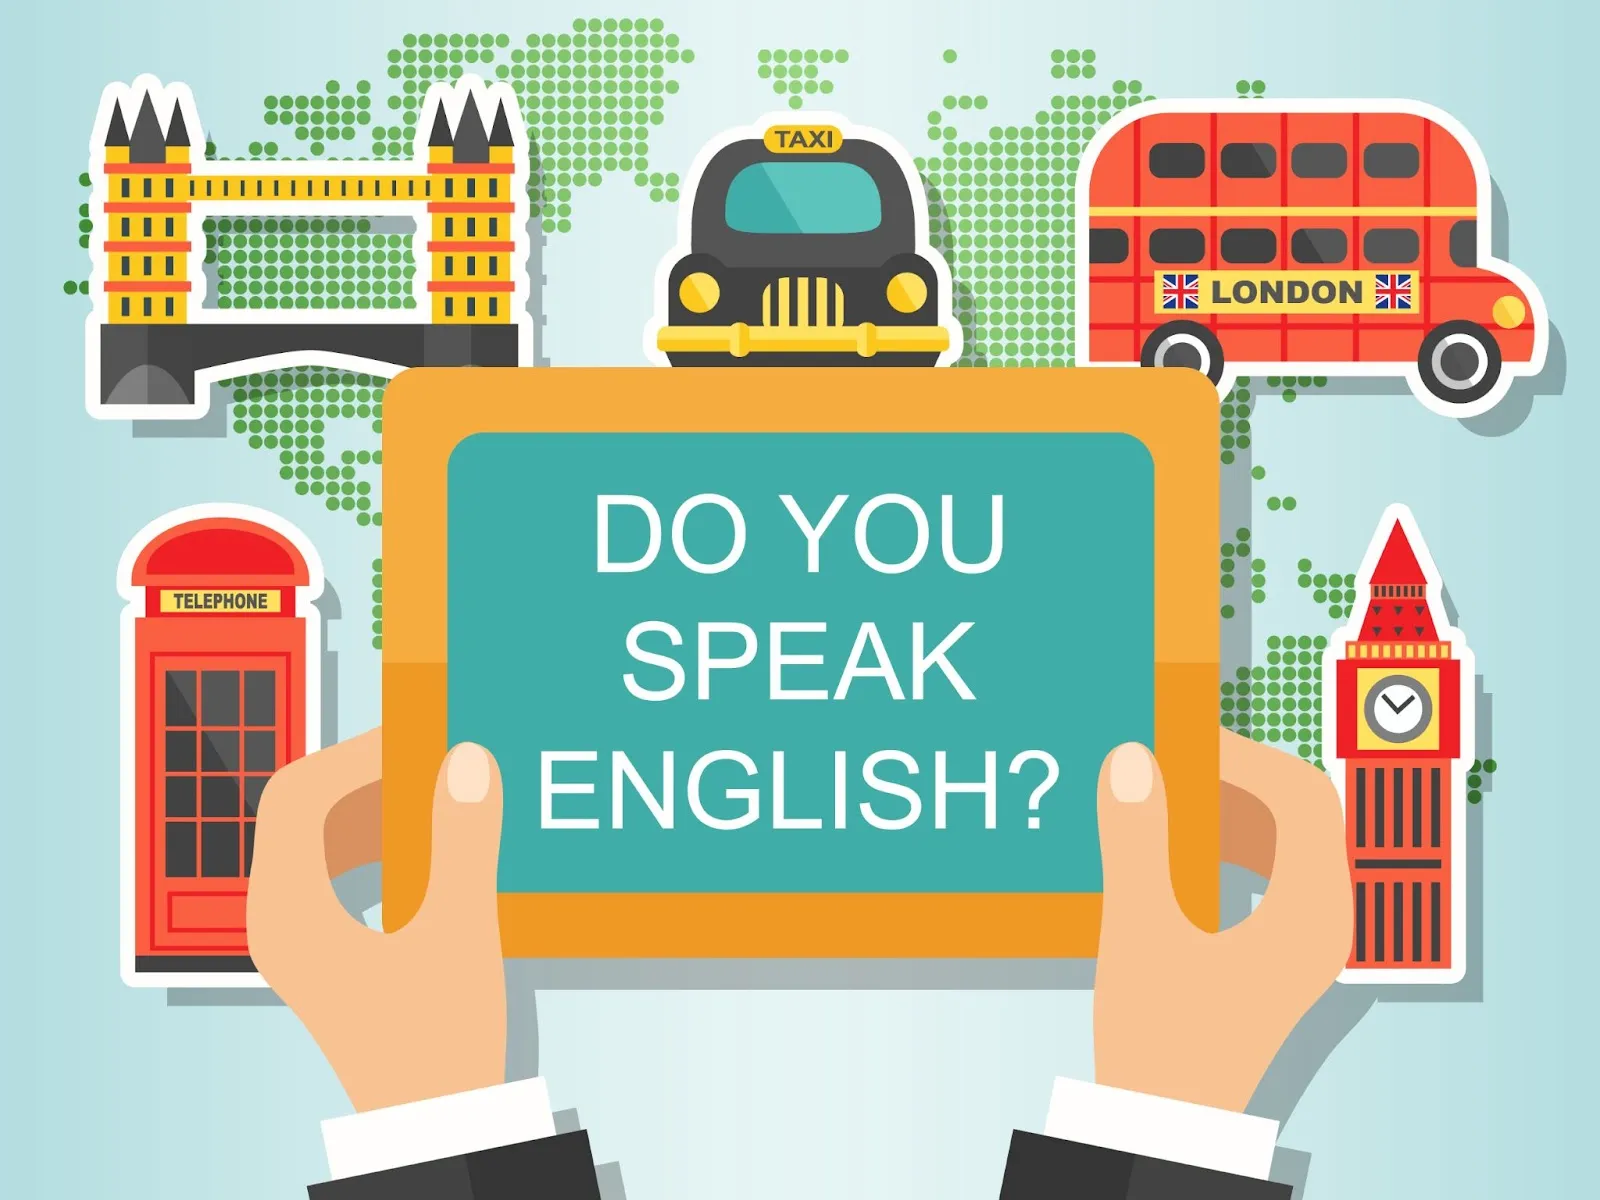 Úprava stupně znalosti jazyka na Novakid: Myslíte si, že má být vaše dítě přesunuto na jinou úroveň angličtiny?